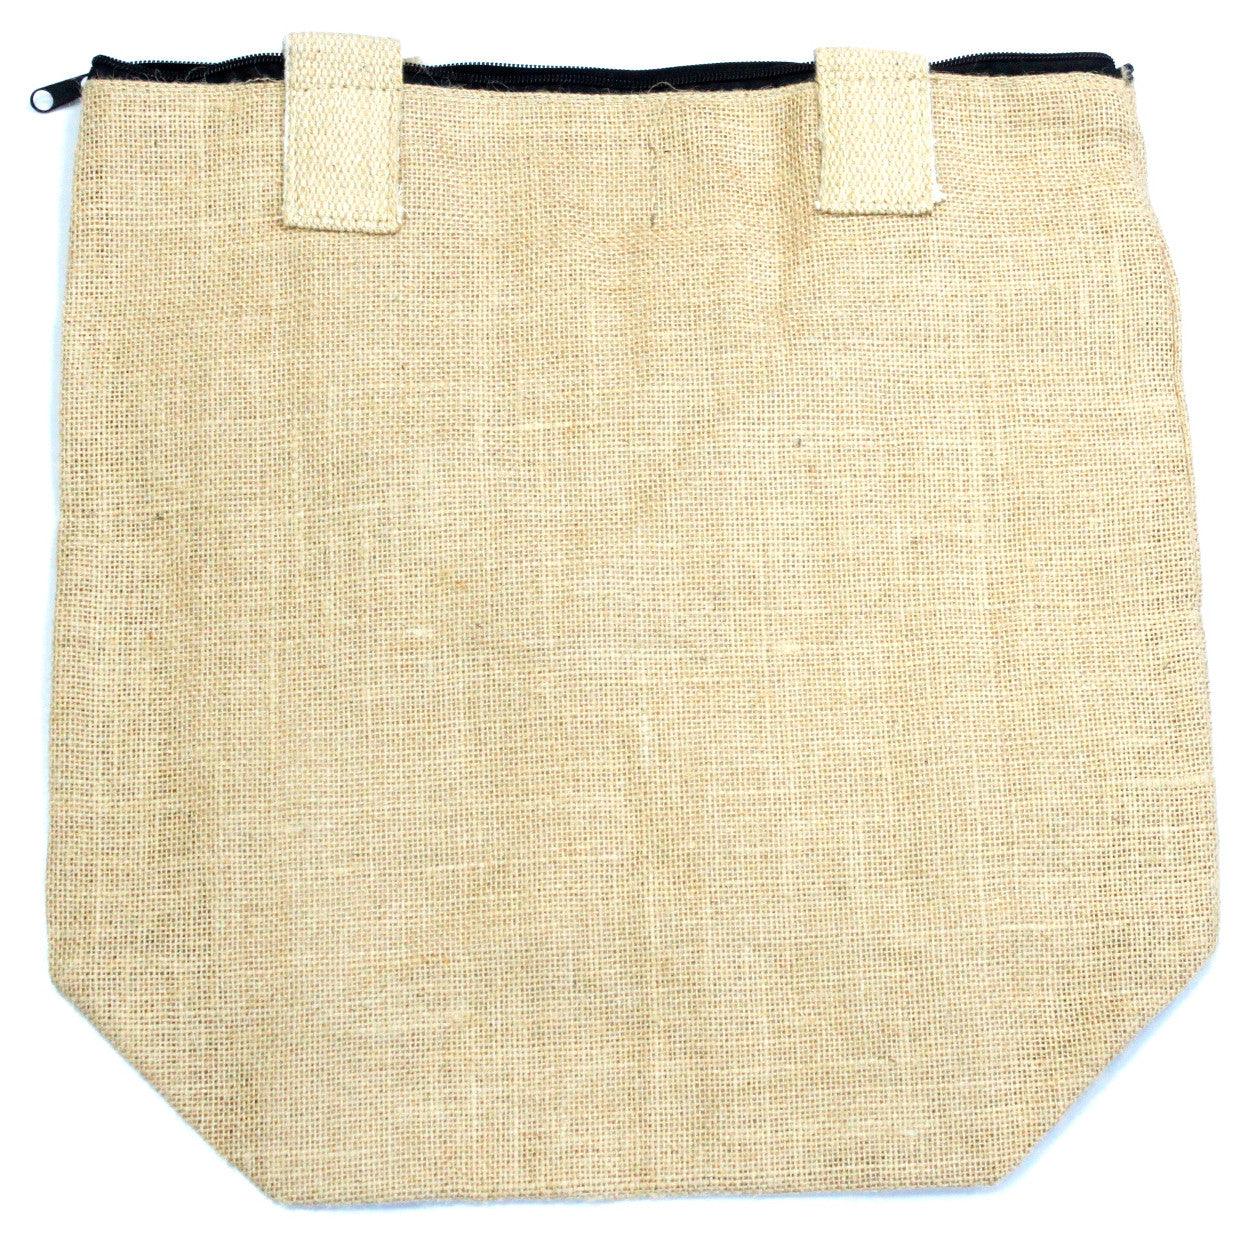 Eco Jute Bag - Blank Design - DuvetDay.co.uk